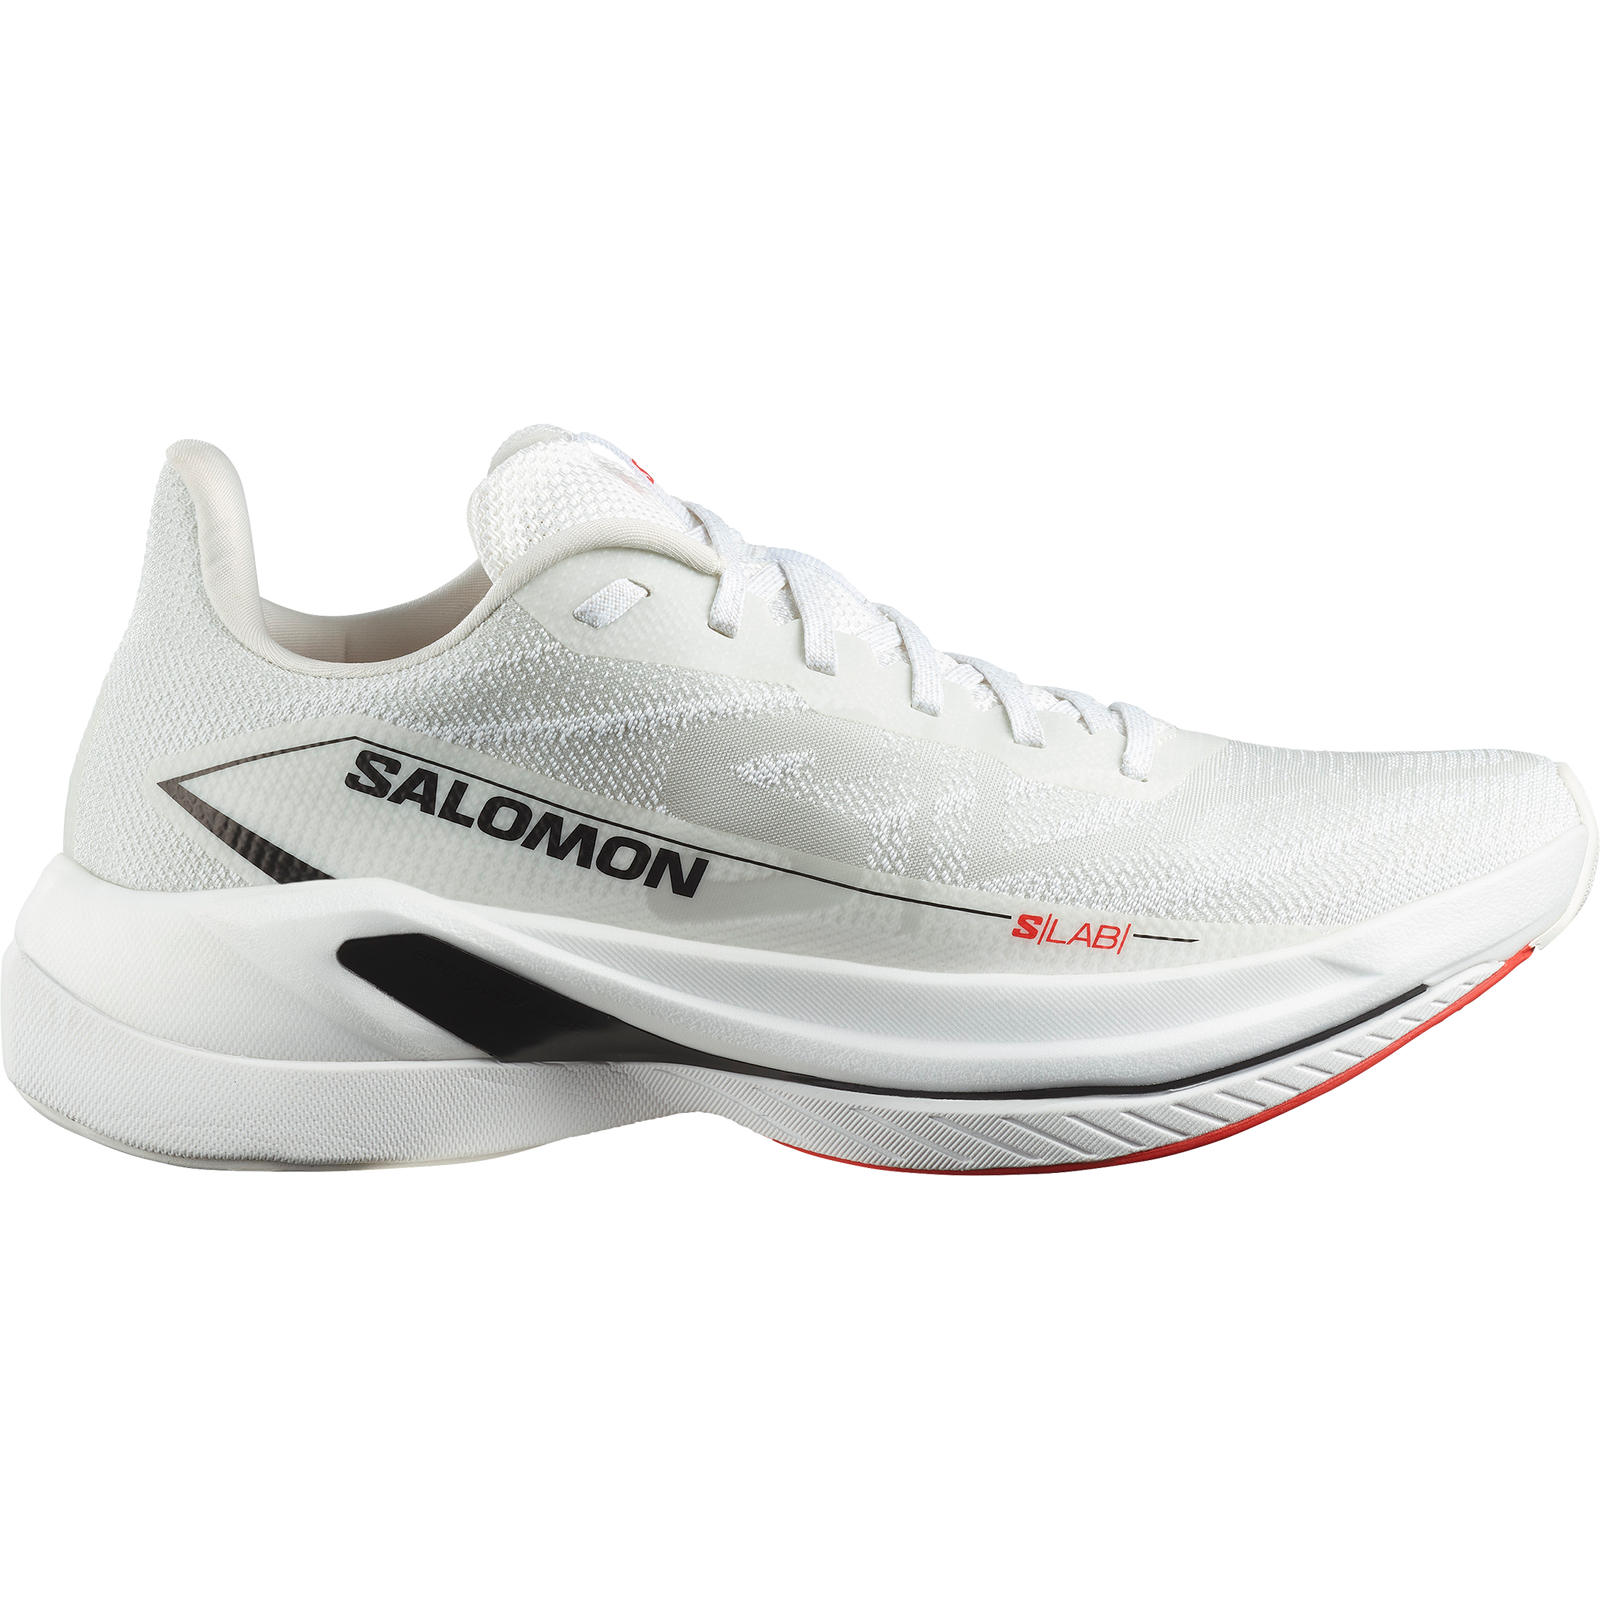 Salomon S/LAB Spectur Zapatillas de running de carretera unisex